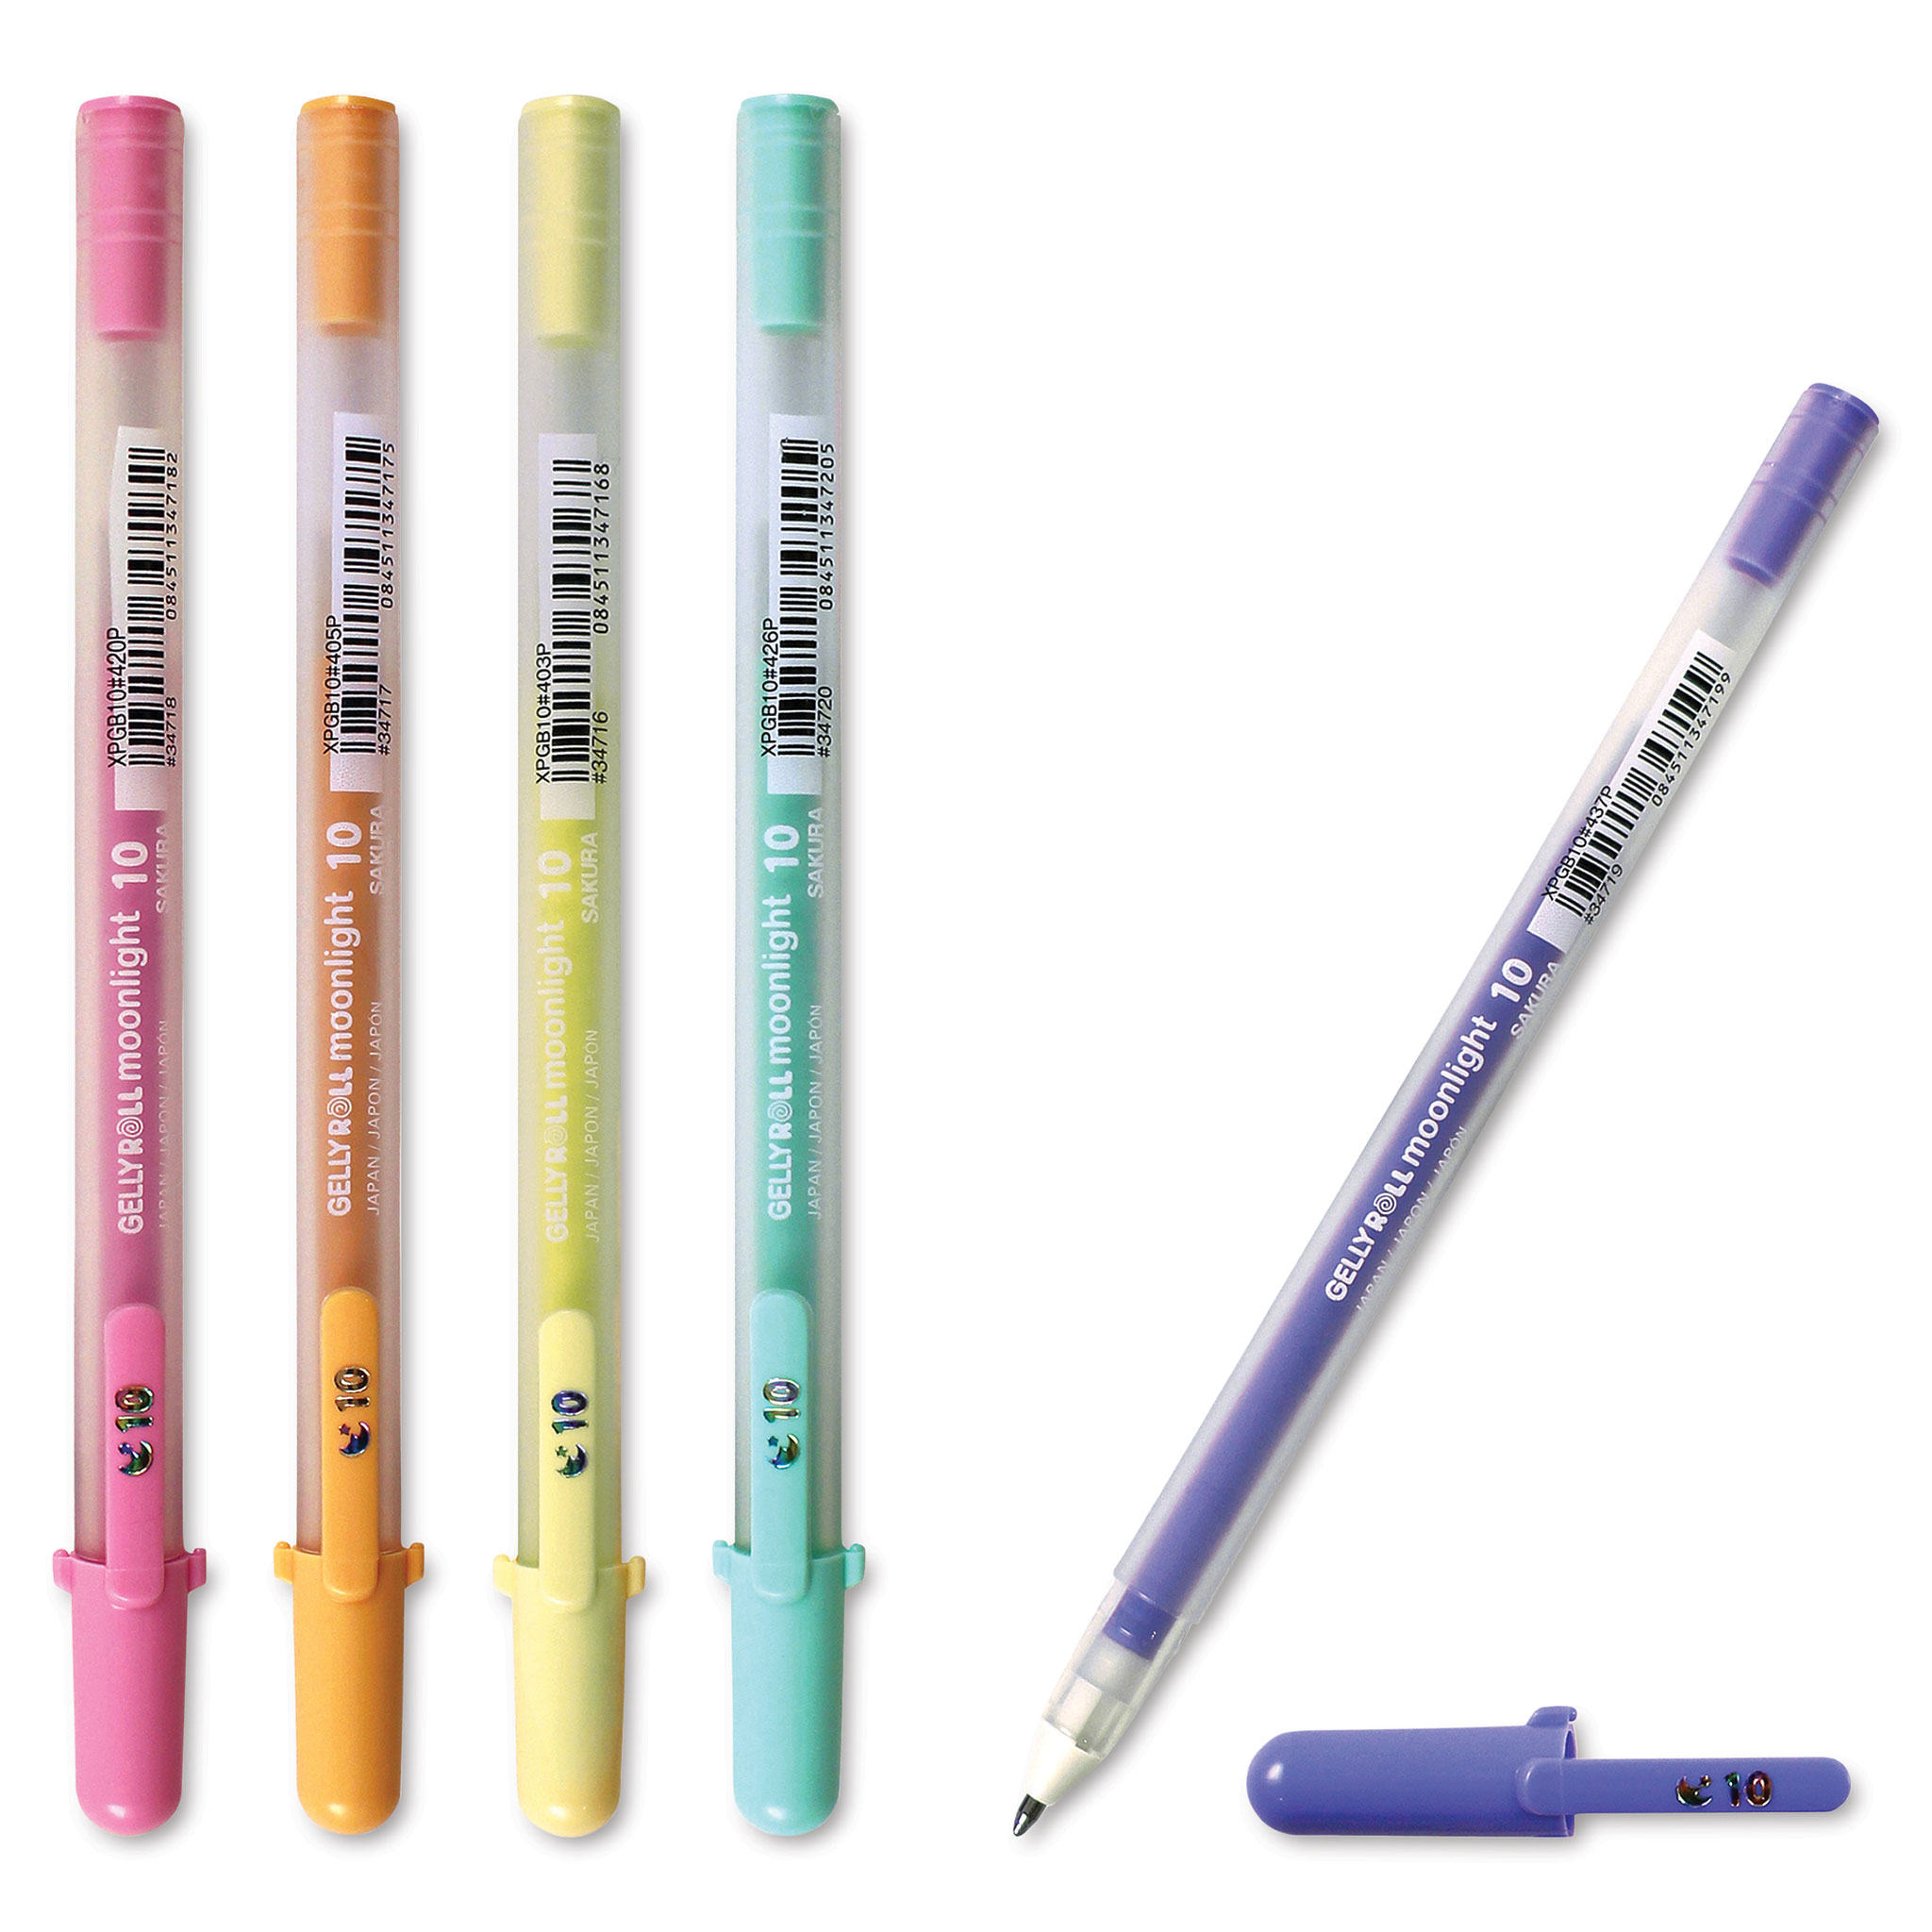 Sakura Gelly Roll Moonlight Pen Sets